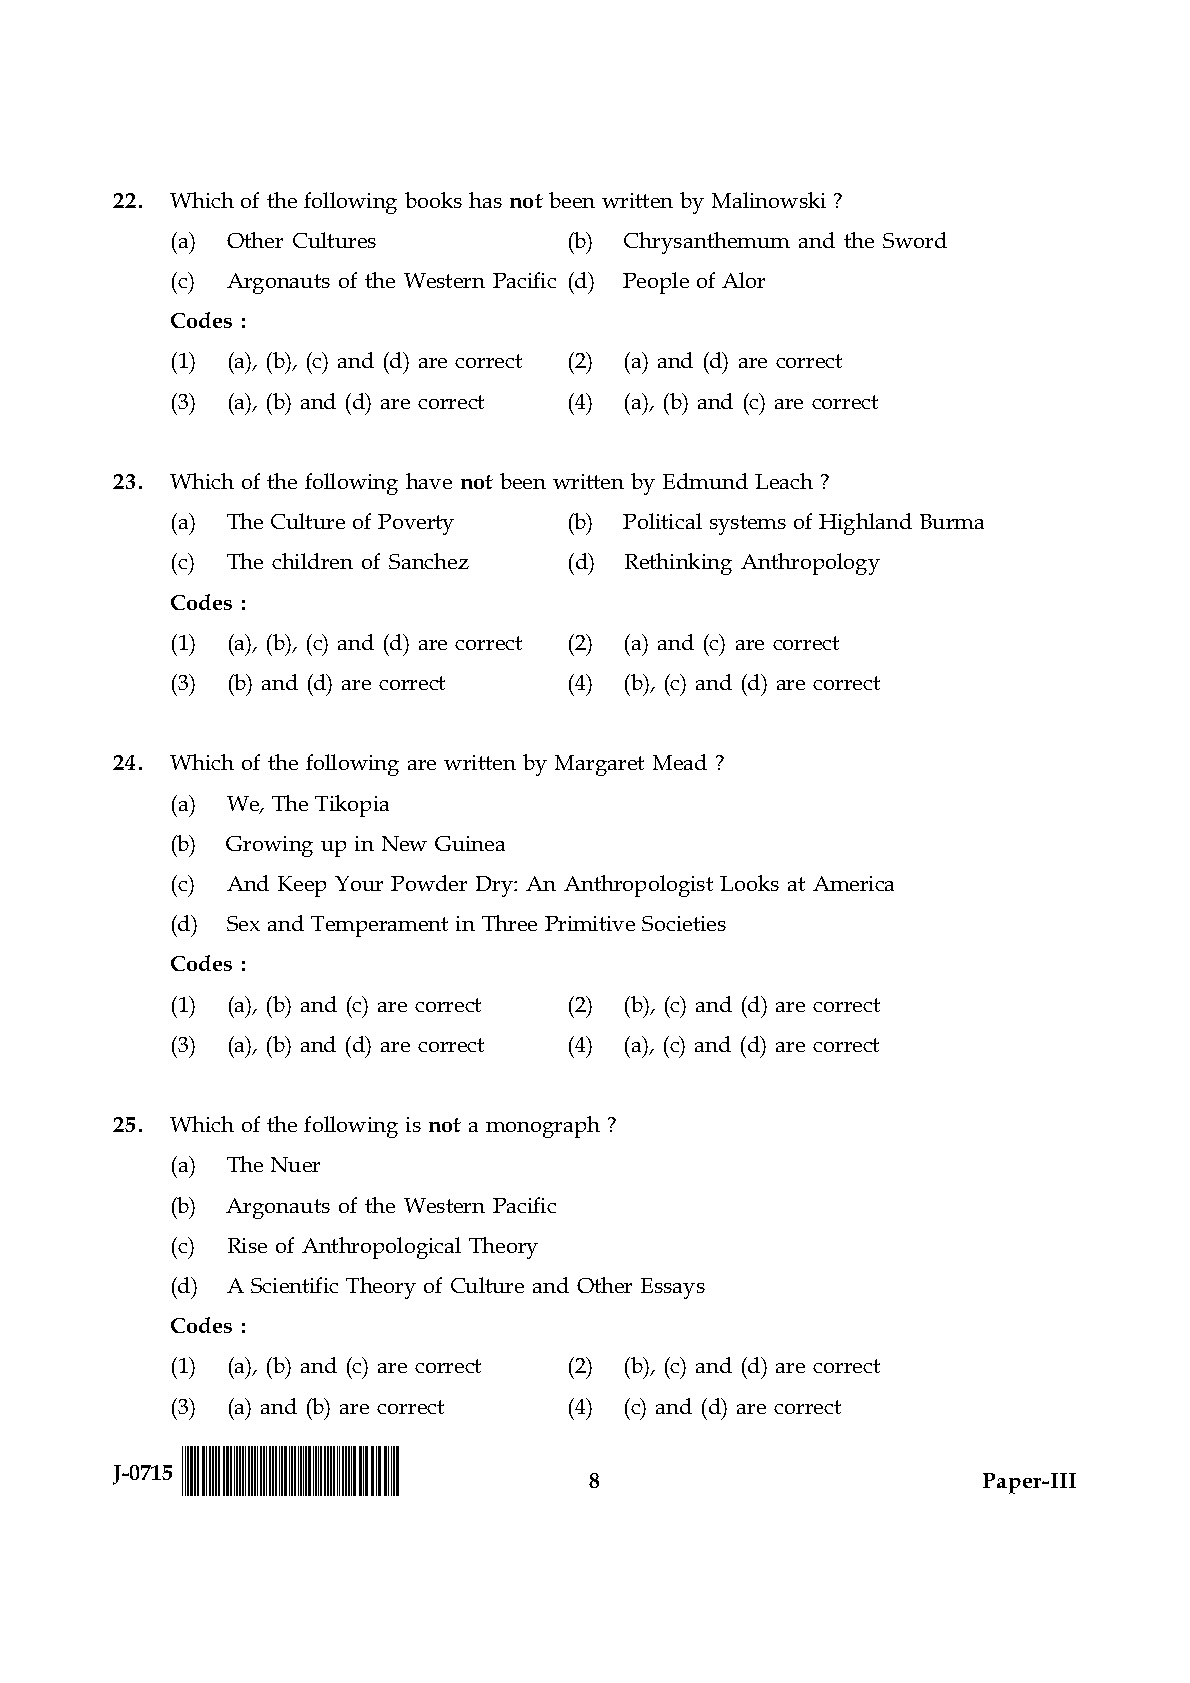 UGC NET Anthropology Question Paper III June 2015 8